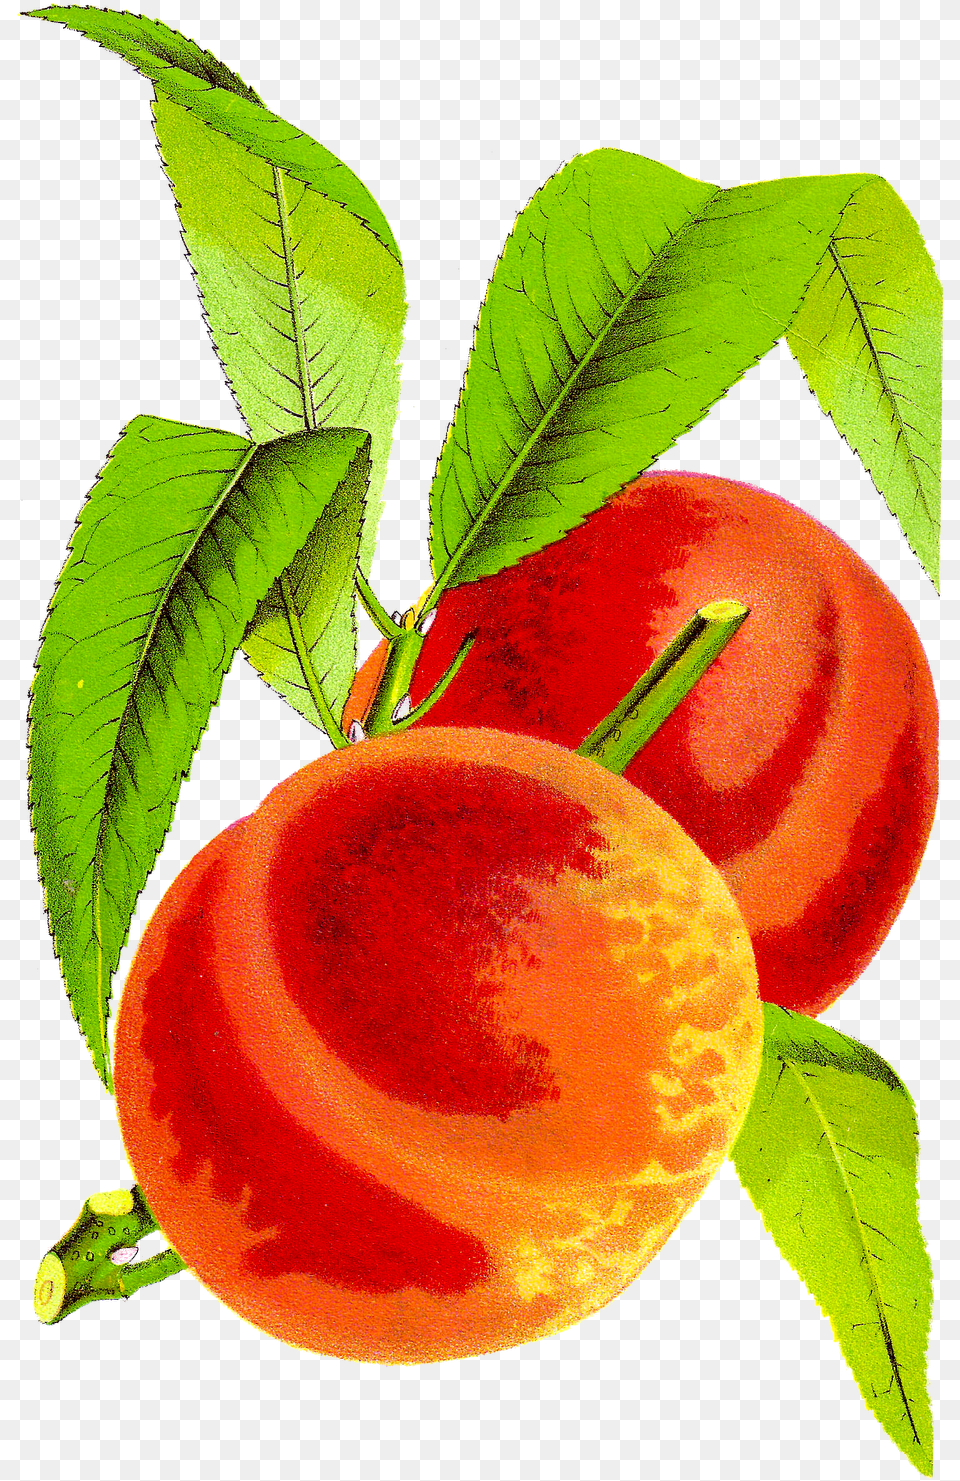 Peach Cobbler Kid Download Clipart Vintage Peach Clip Art, Food, Fruit, Plant, Produce Free Png